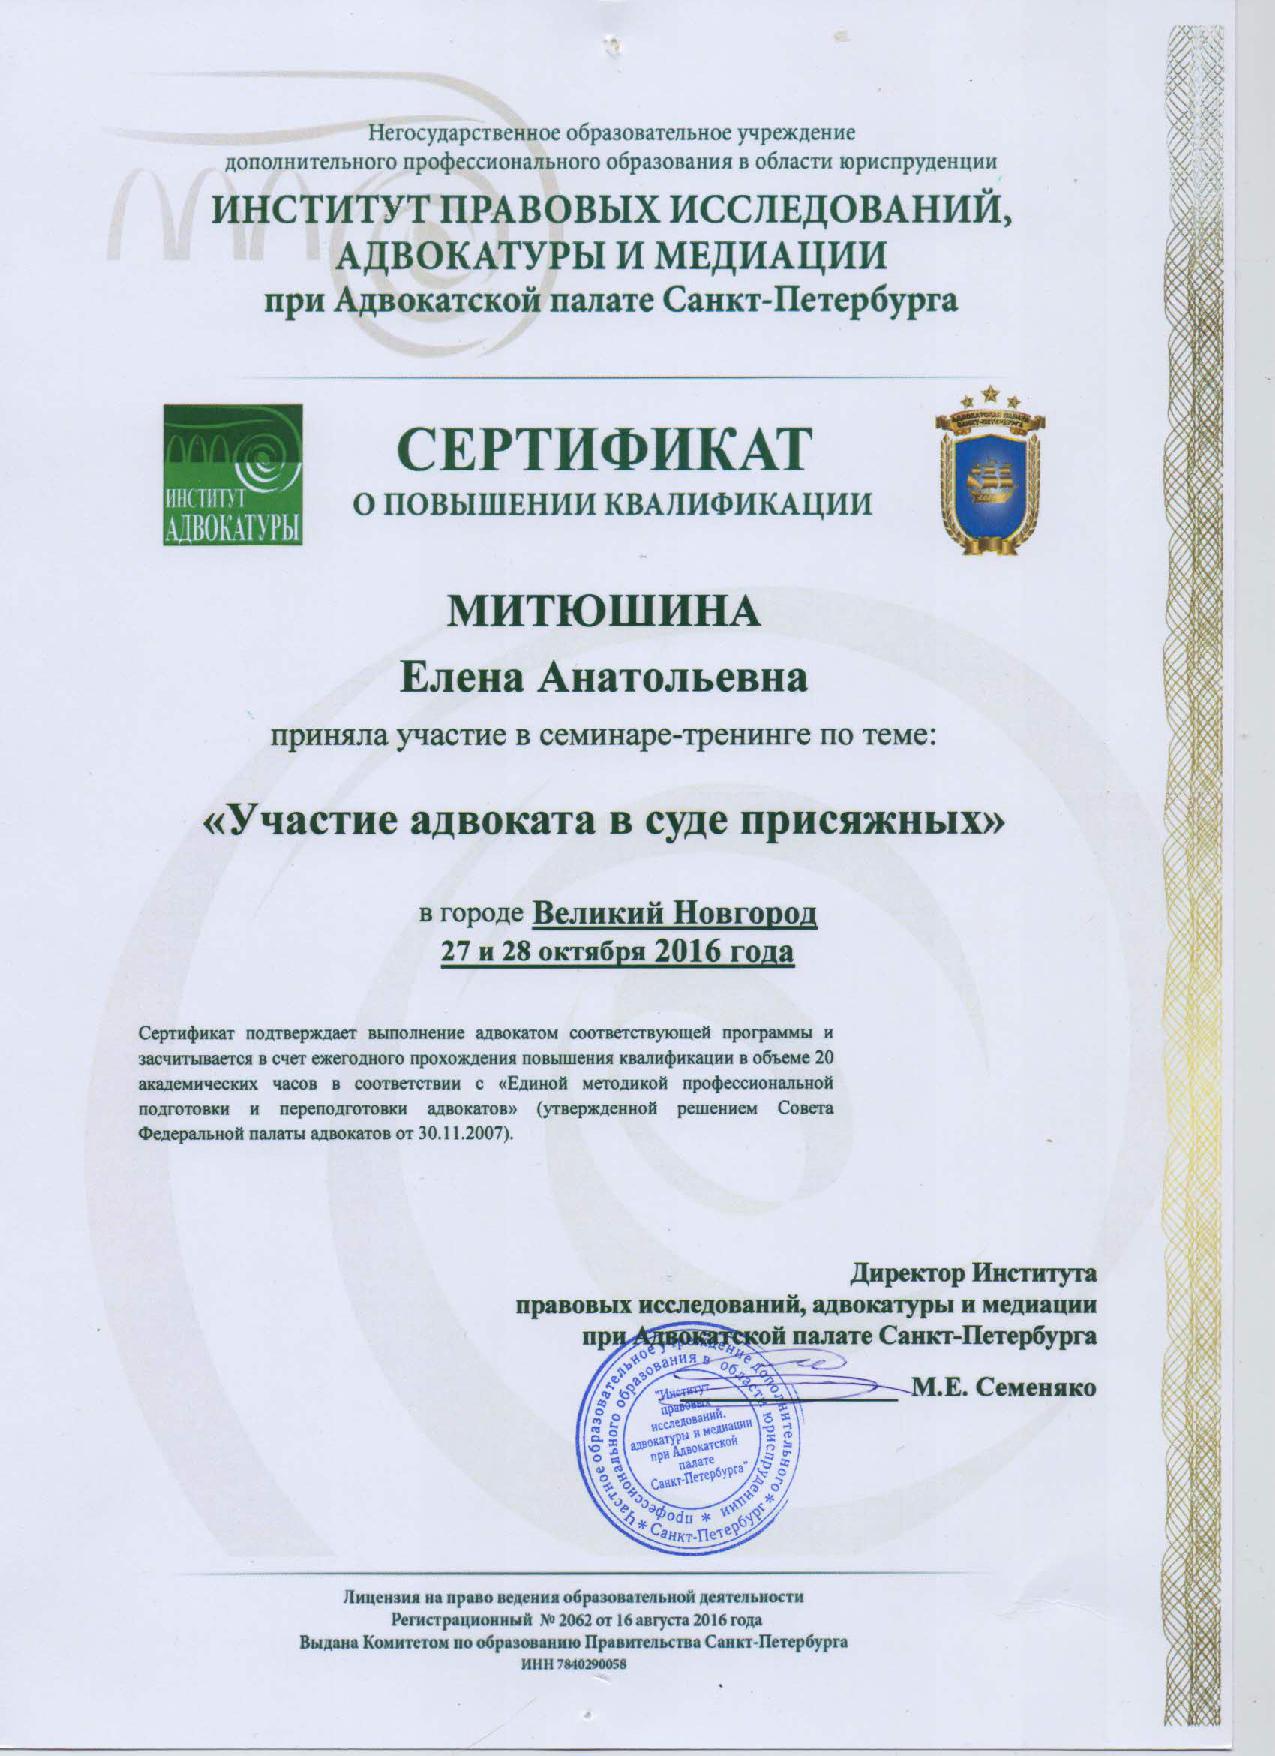 Сертификат "Участие адвоката в суде присяжных"